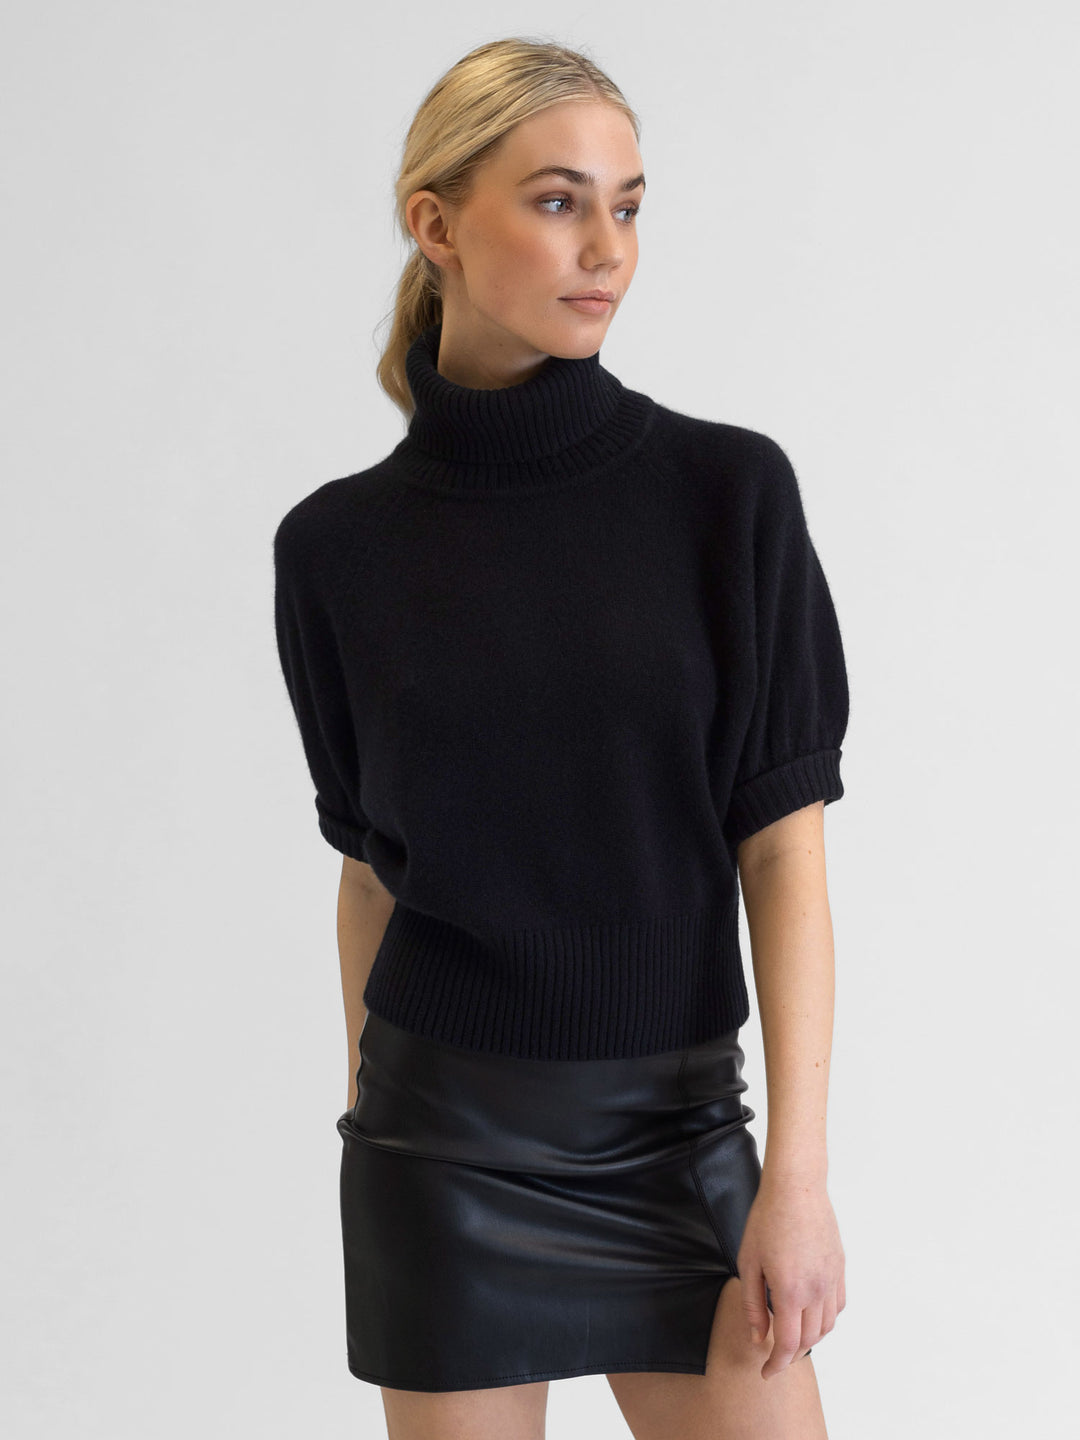 Short sleeved turtle neck cashmere sweater. Color Black. Scandinavian design by Kashmina